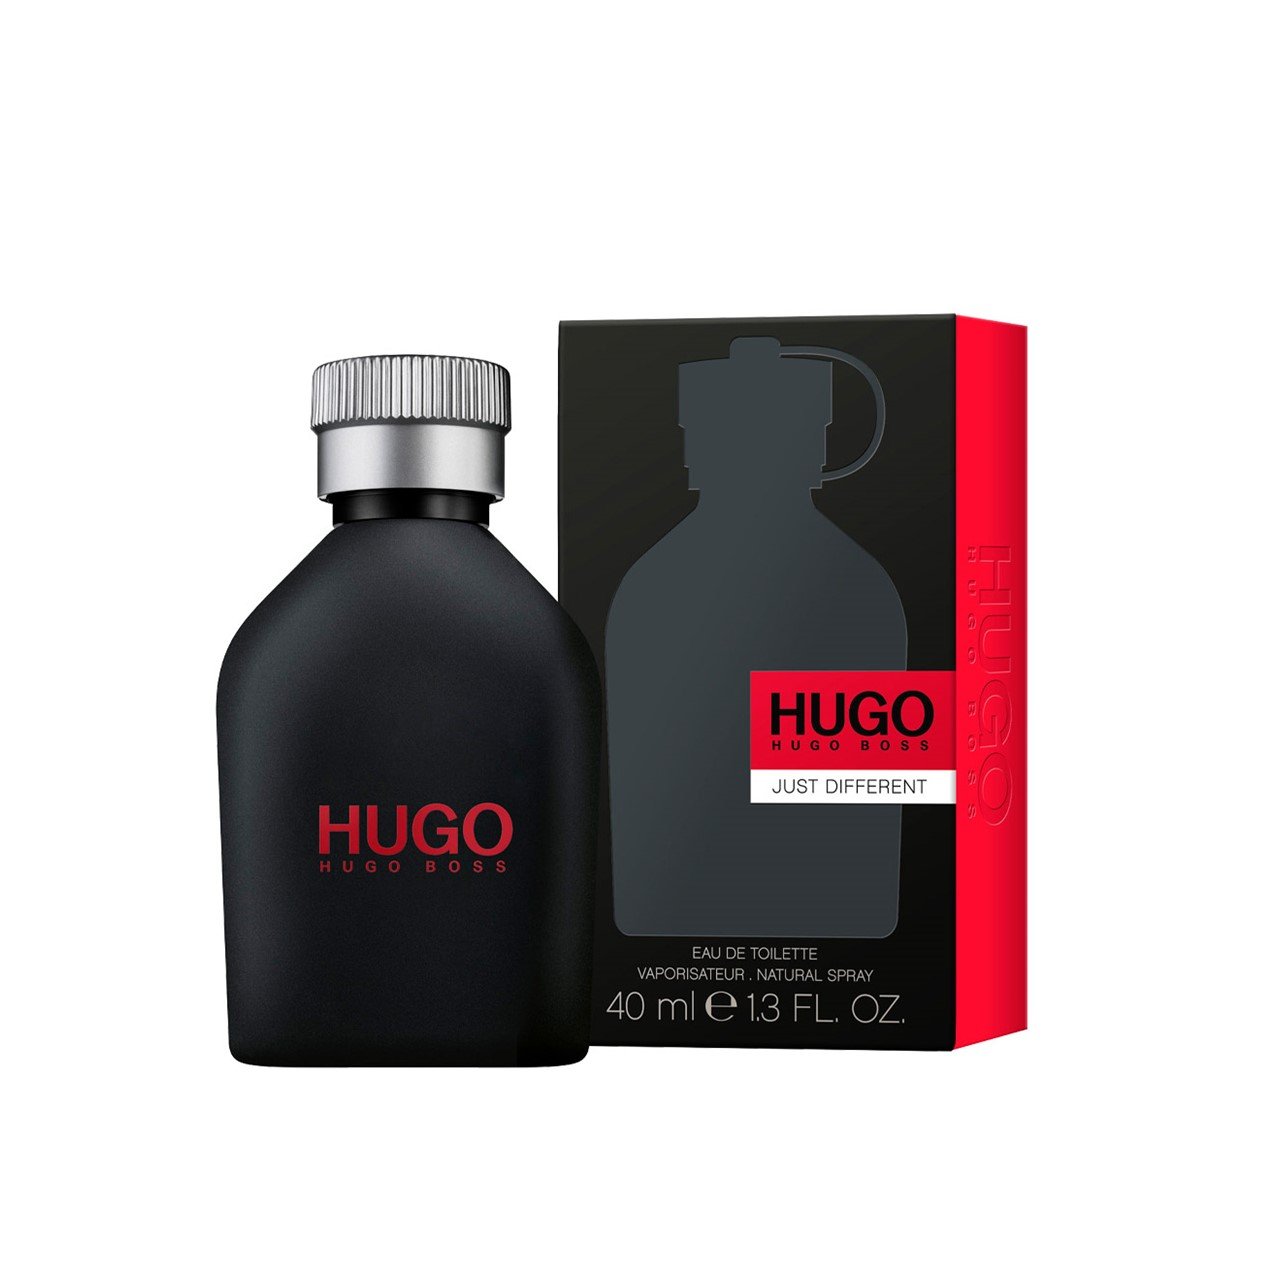 Hugo Boss Hugo Just Different Eau de Toilette 40ml (1.4fl oz)